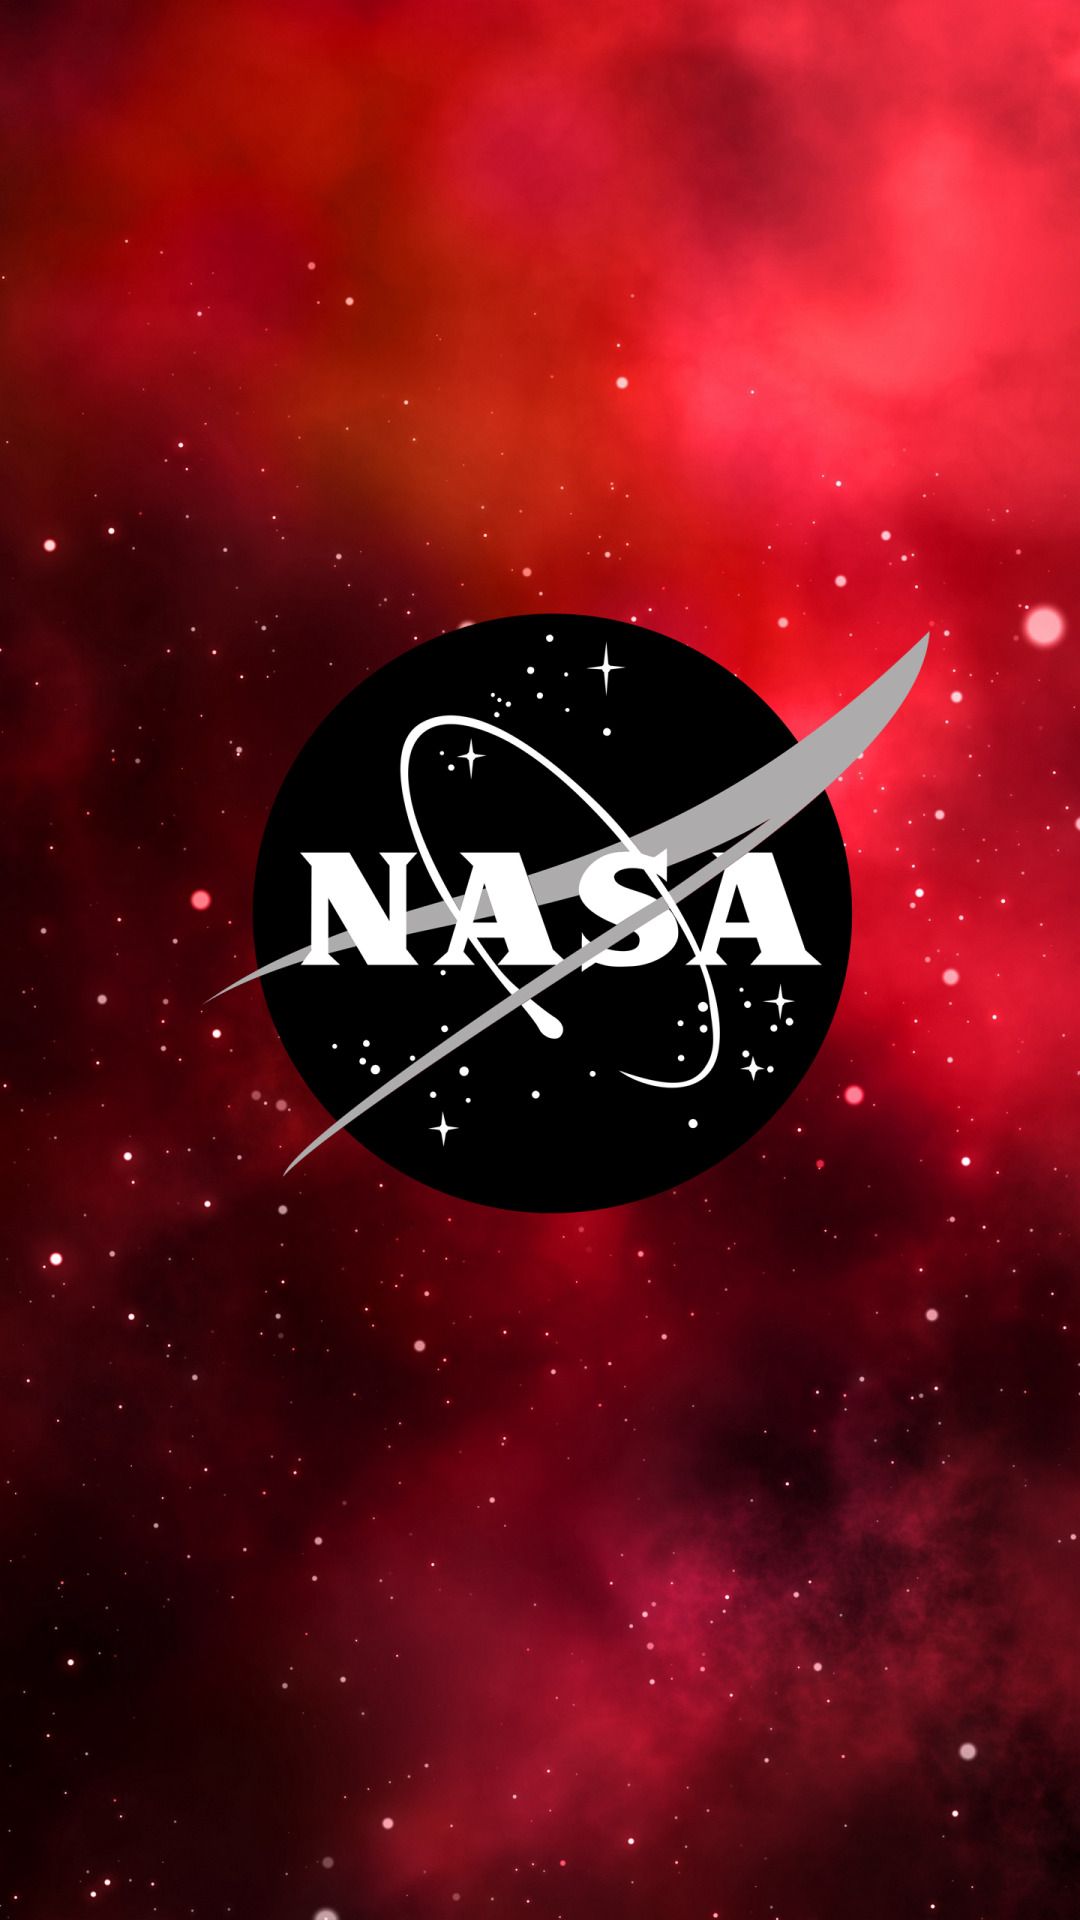 Fondos de pantalla de NASA - FondosMil